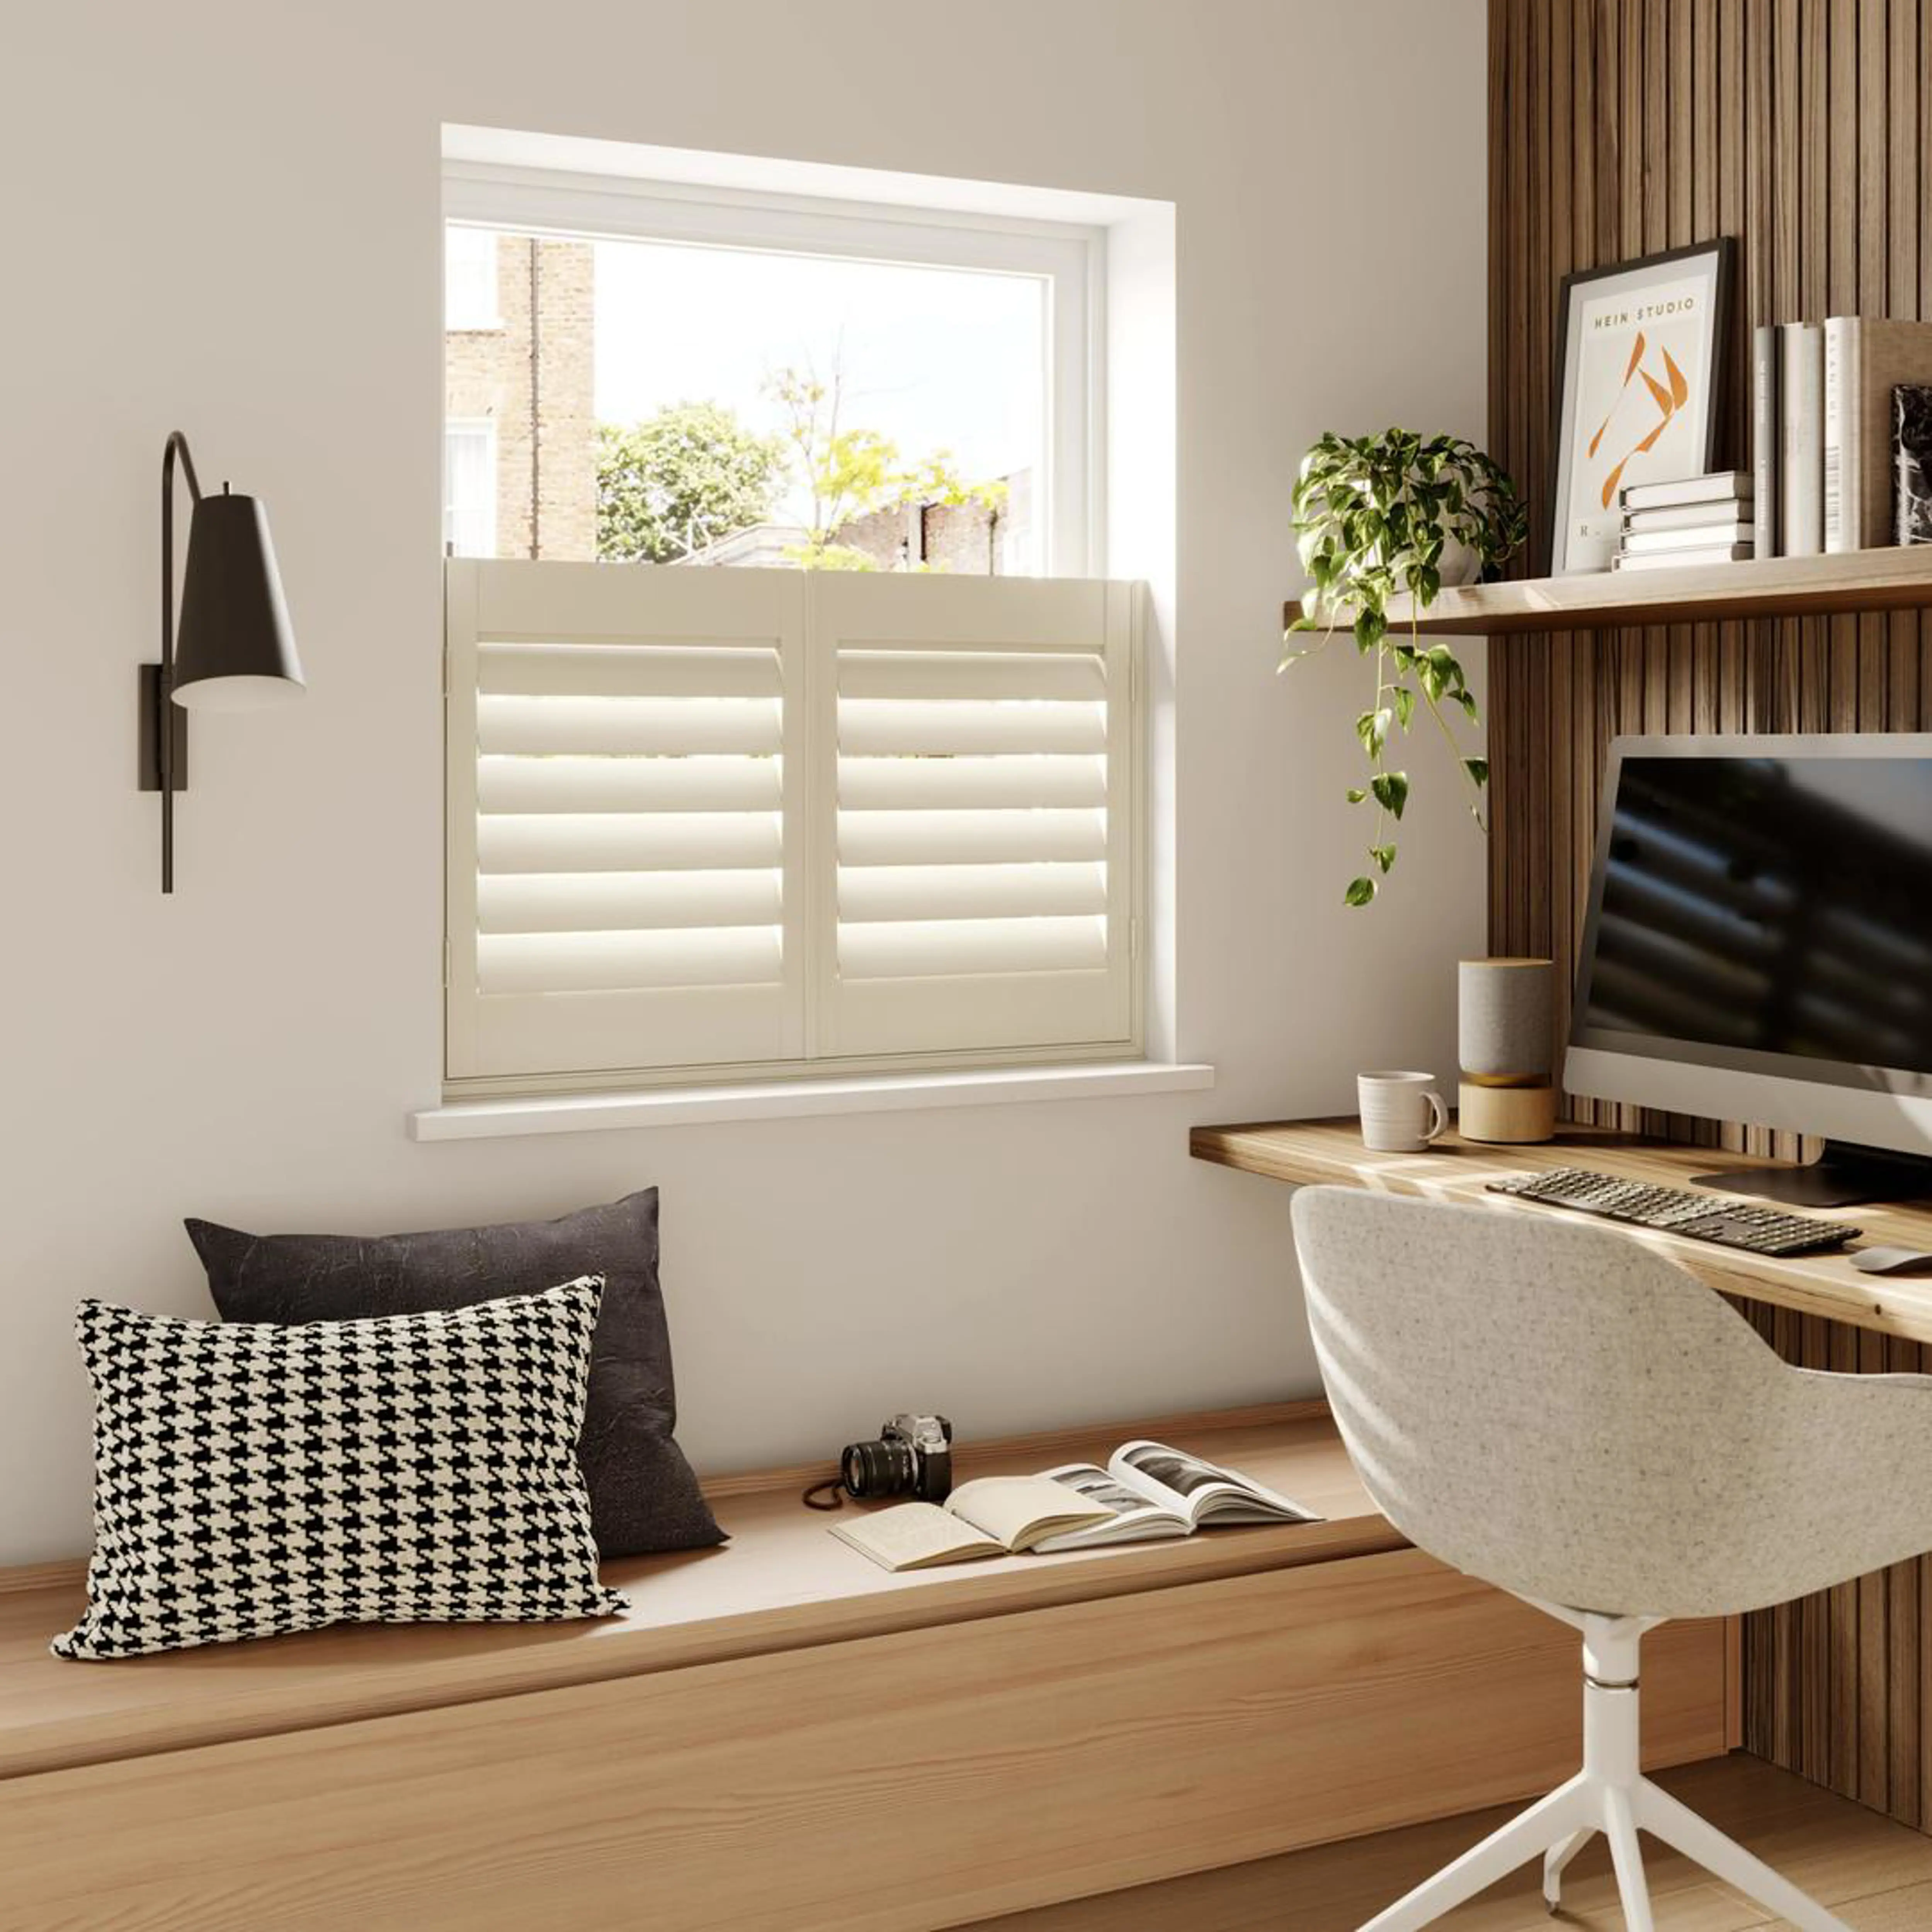 Cream wooden window shutters in home office